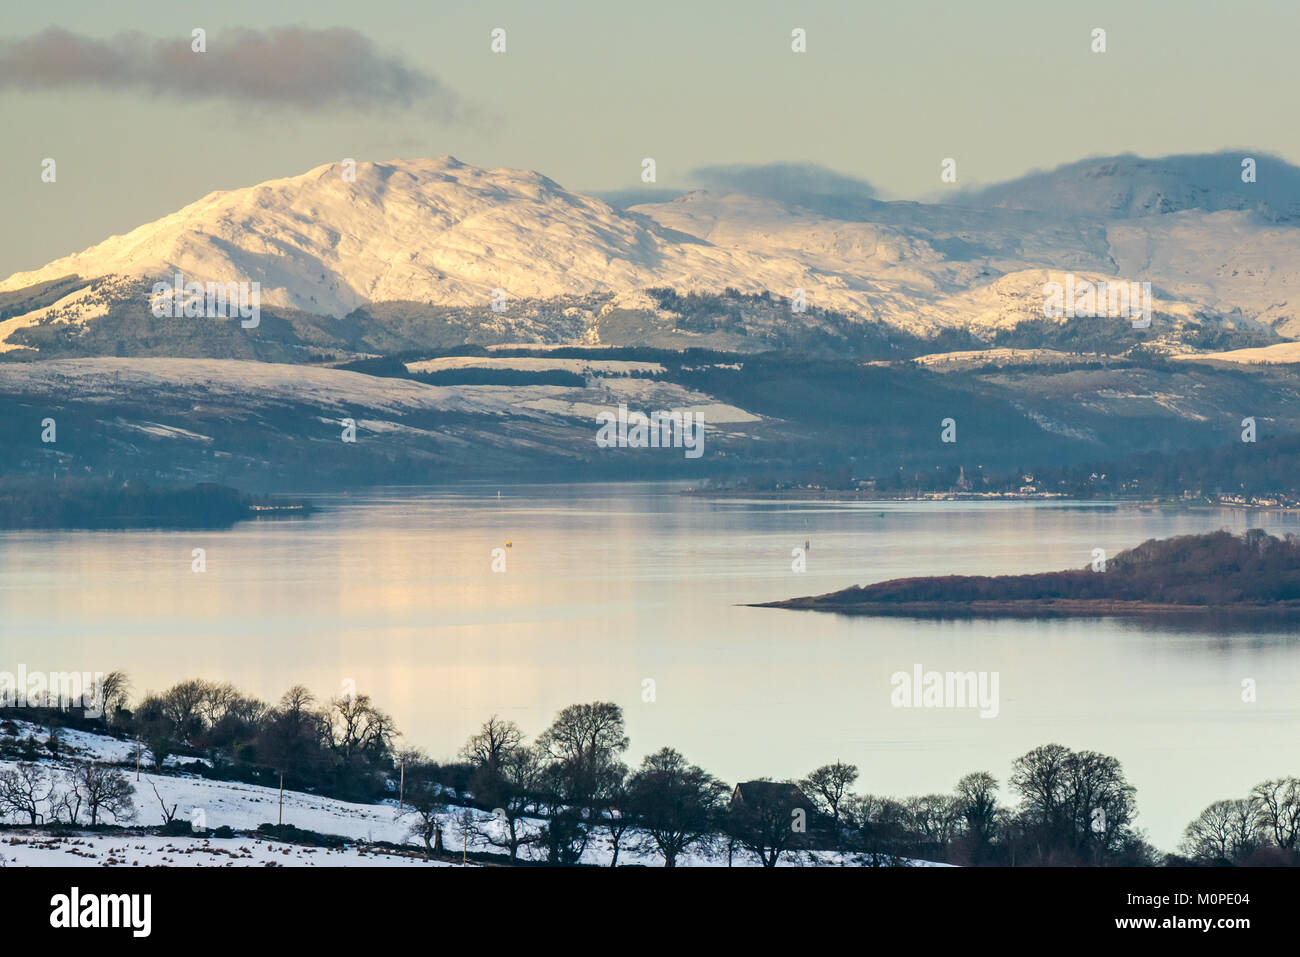 Scène d'hiver dans l'ensemble de Clyde River au-dessus de la colline de Langbank. Montagnes couvertes de neige, ciel bleu et le calme de l'eau dans la lumière du soir, Ecosse, Royaume-Uni Banque D'Images